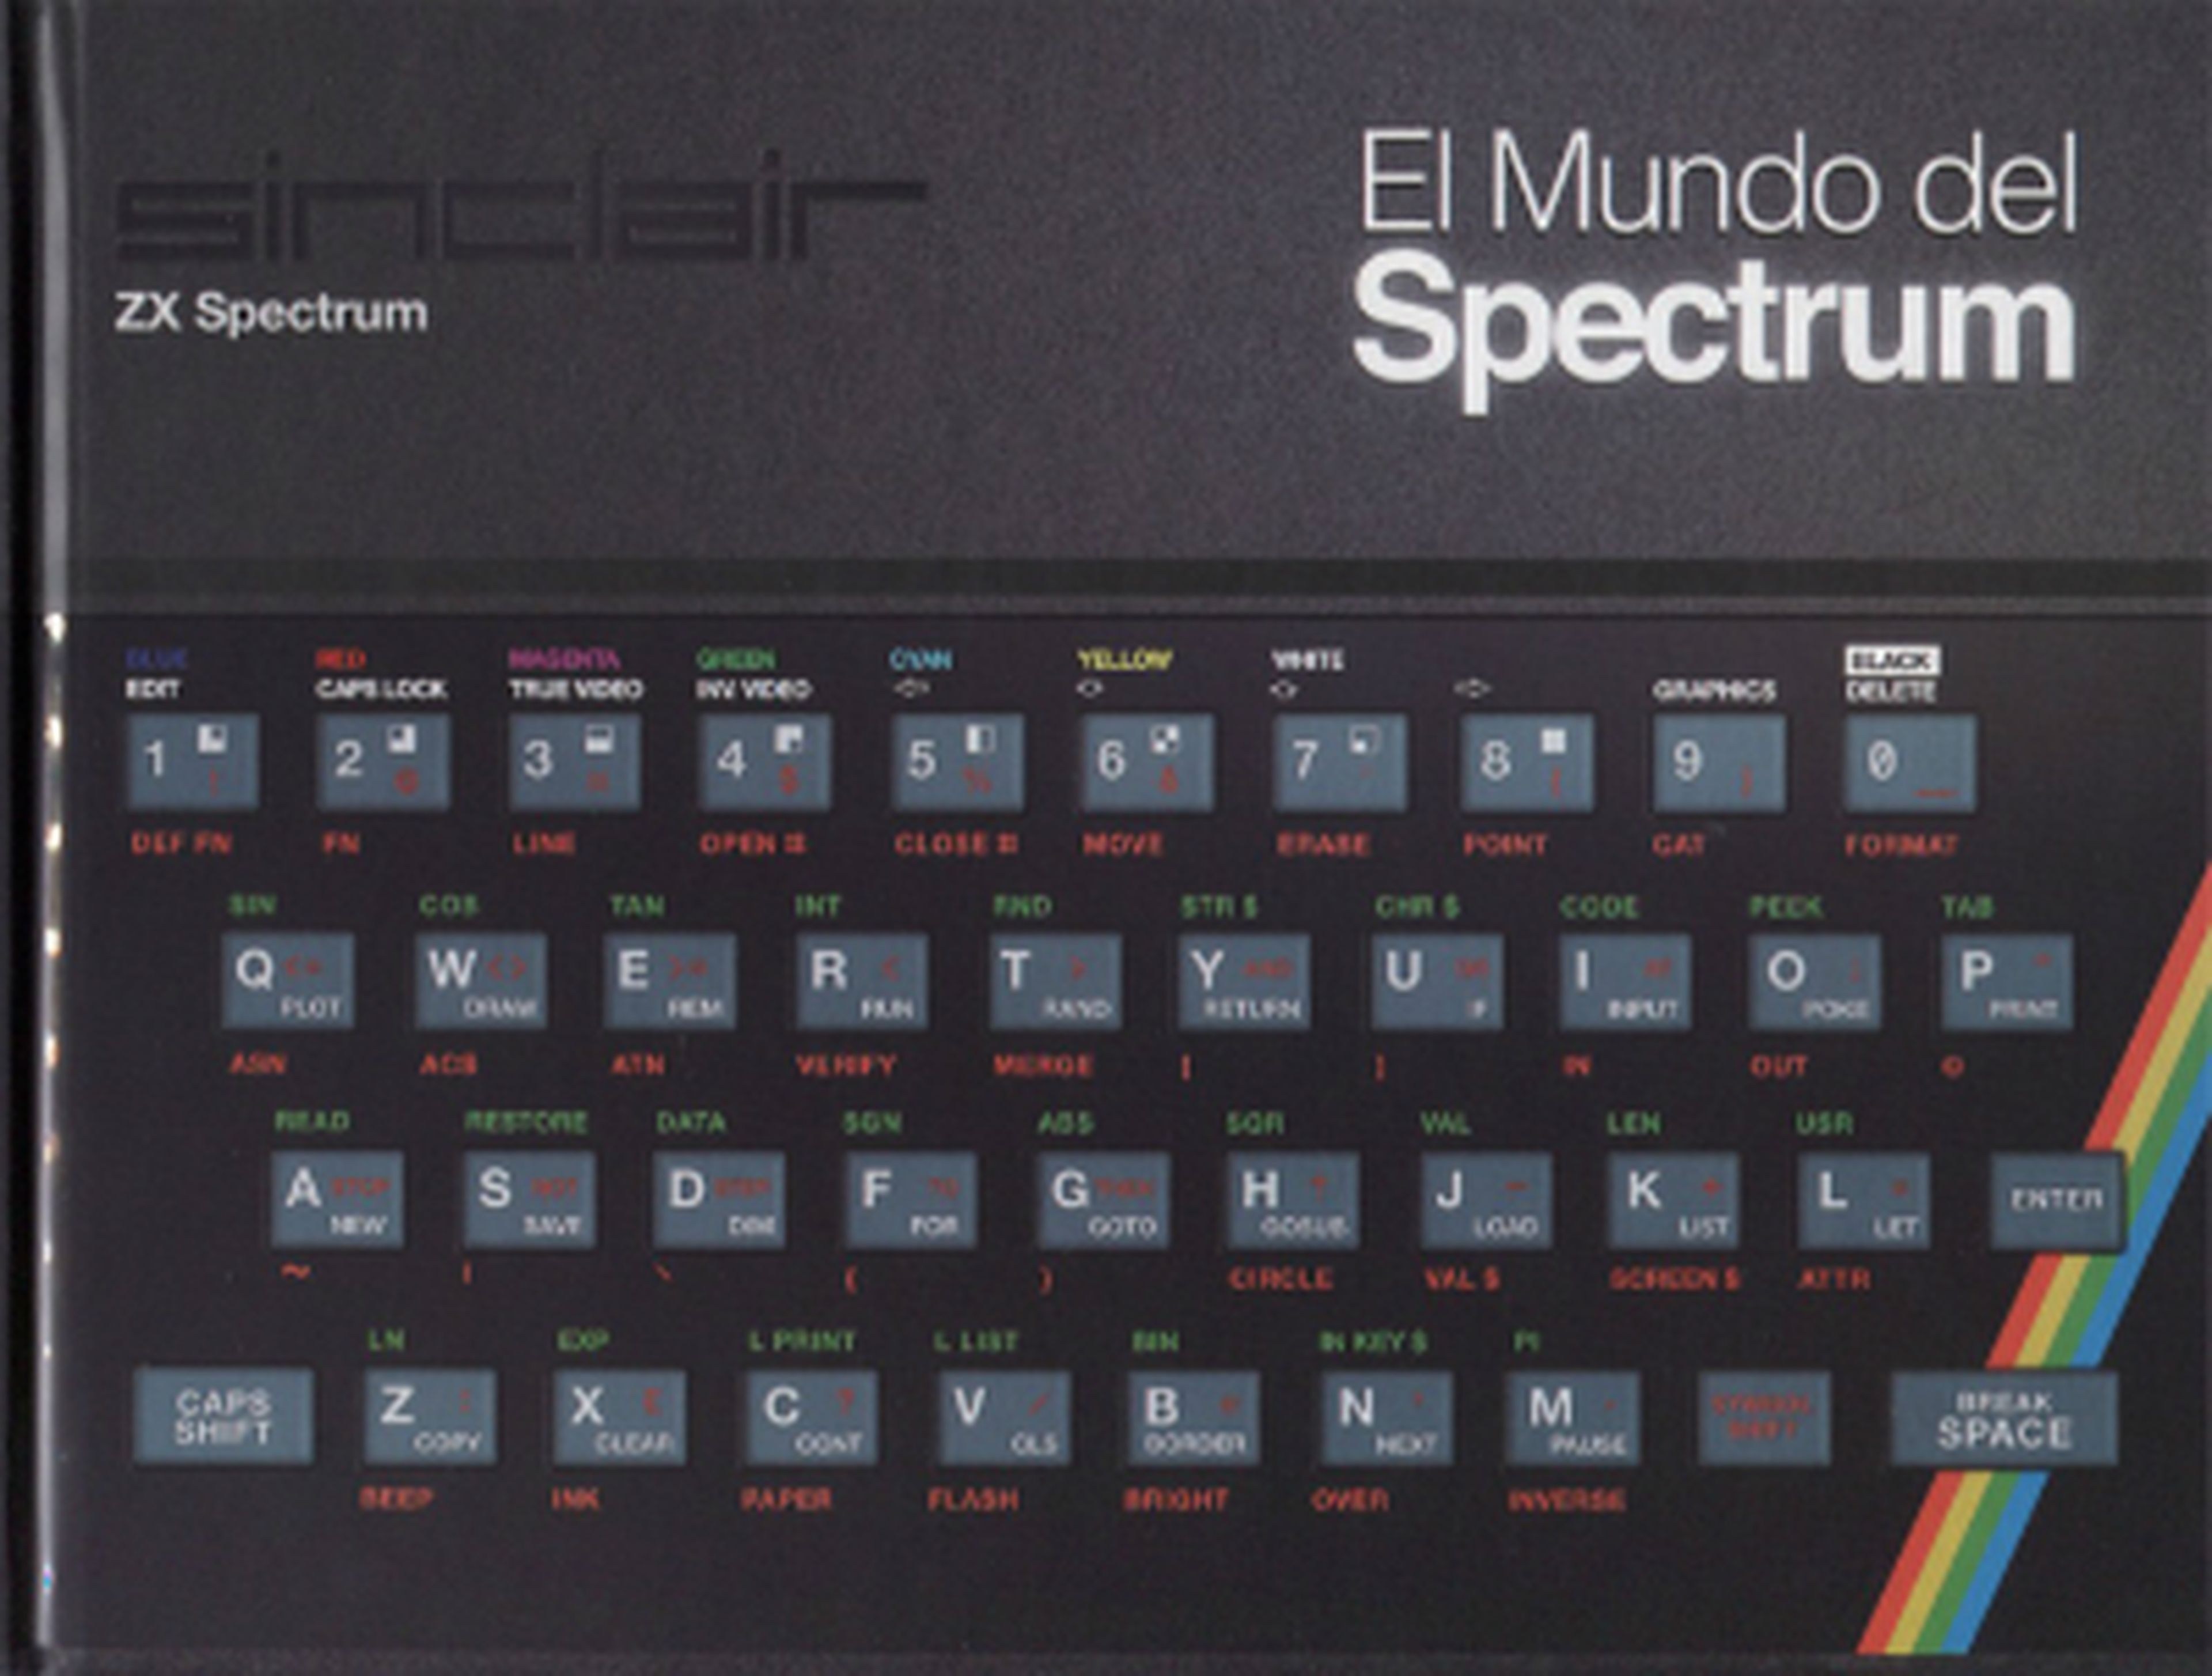 El mundo del Spectrum